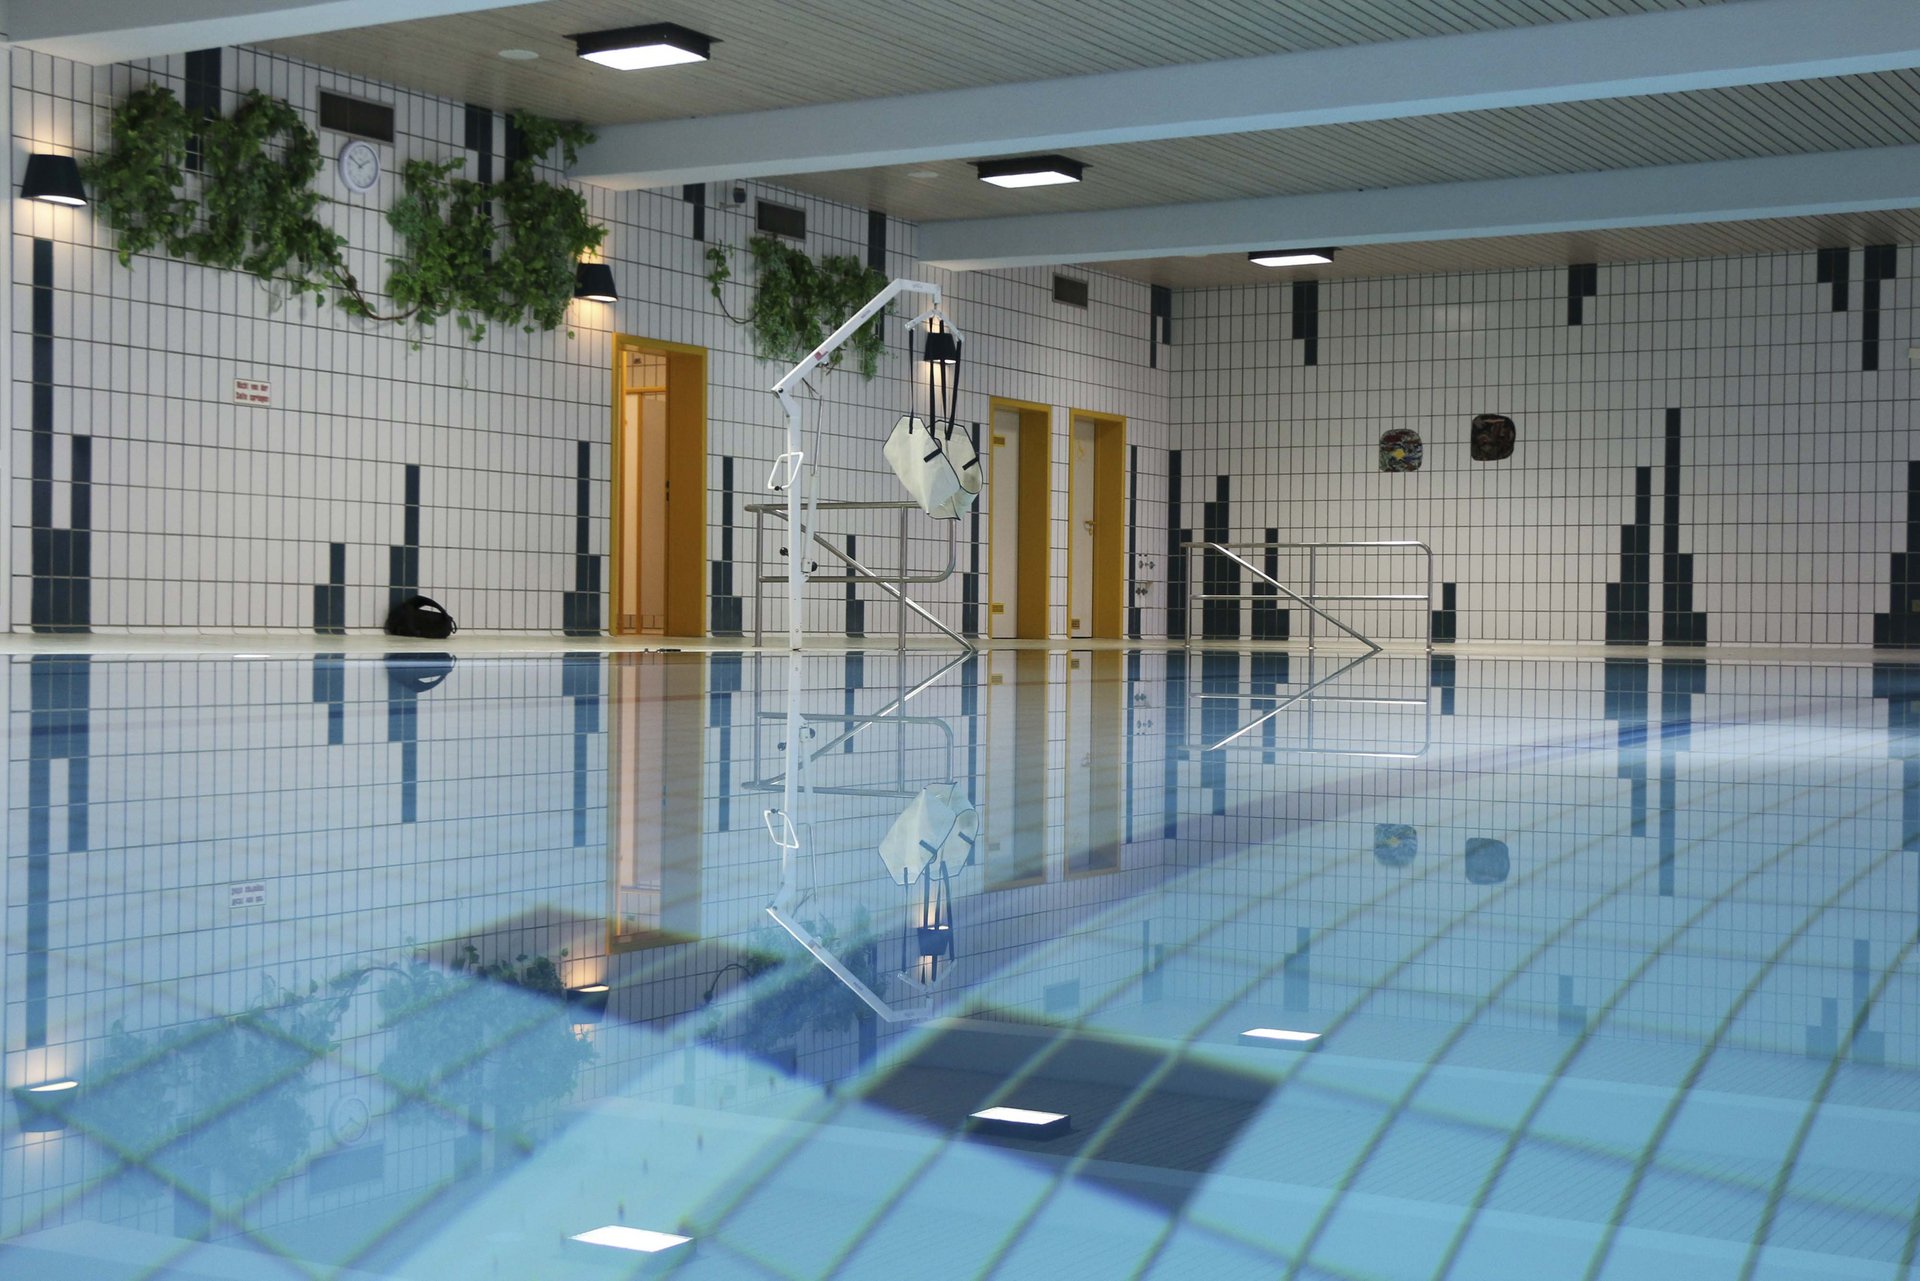 Bild: Schwimmbecken im Hallenbad in Mitterteich